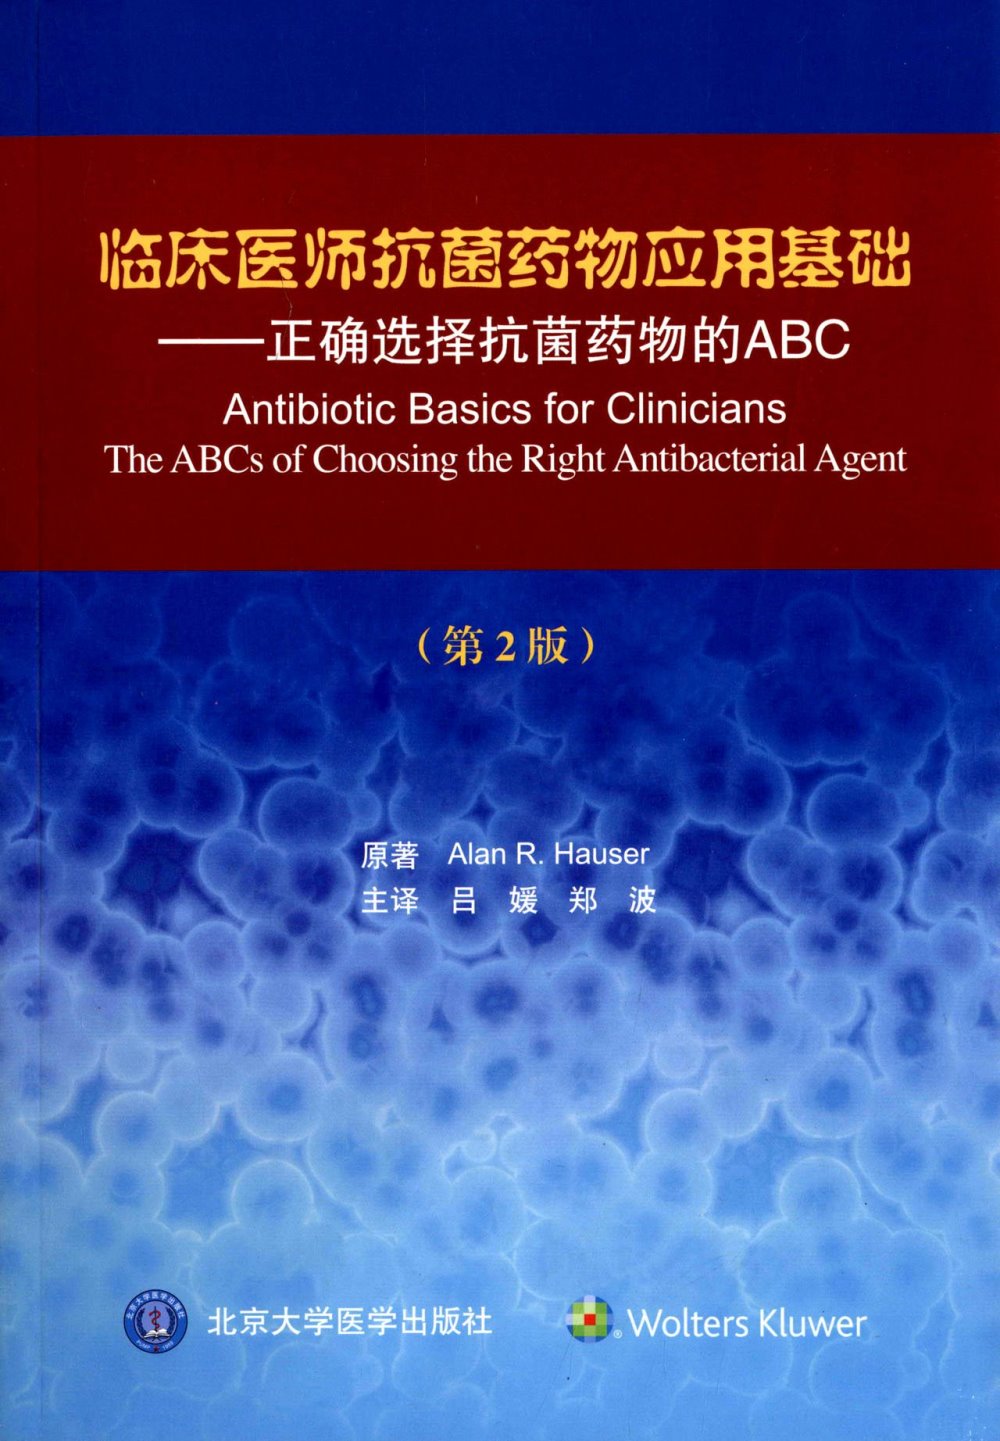 臨床醫師抗菌藥物應用基礎--正確選擇抗菌藥物的ABC（第2版）